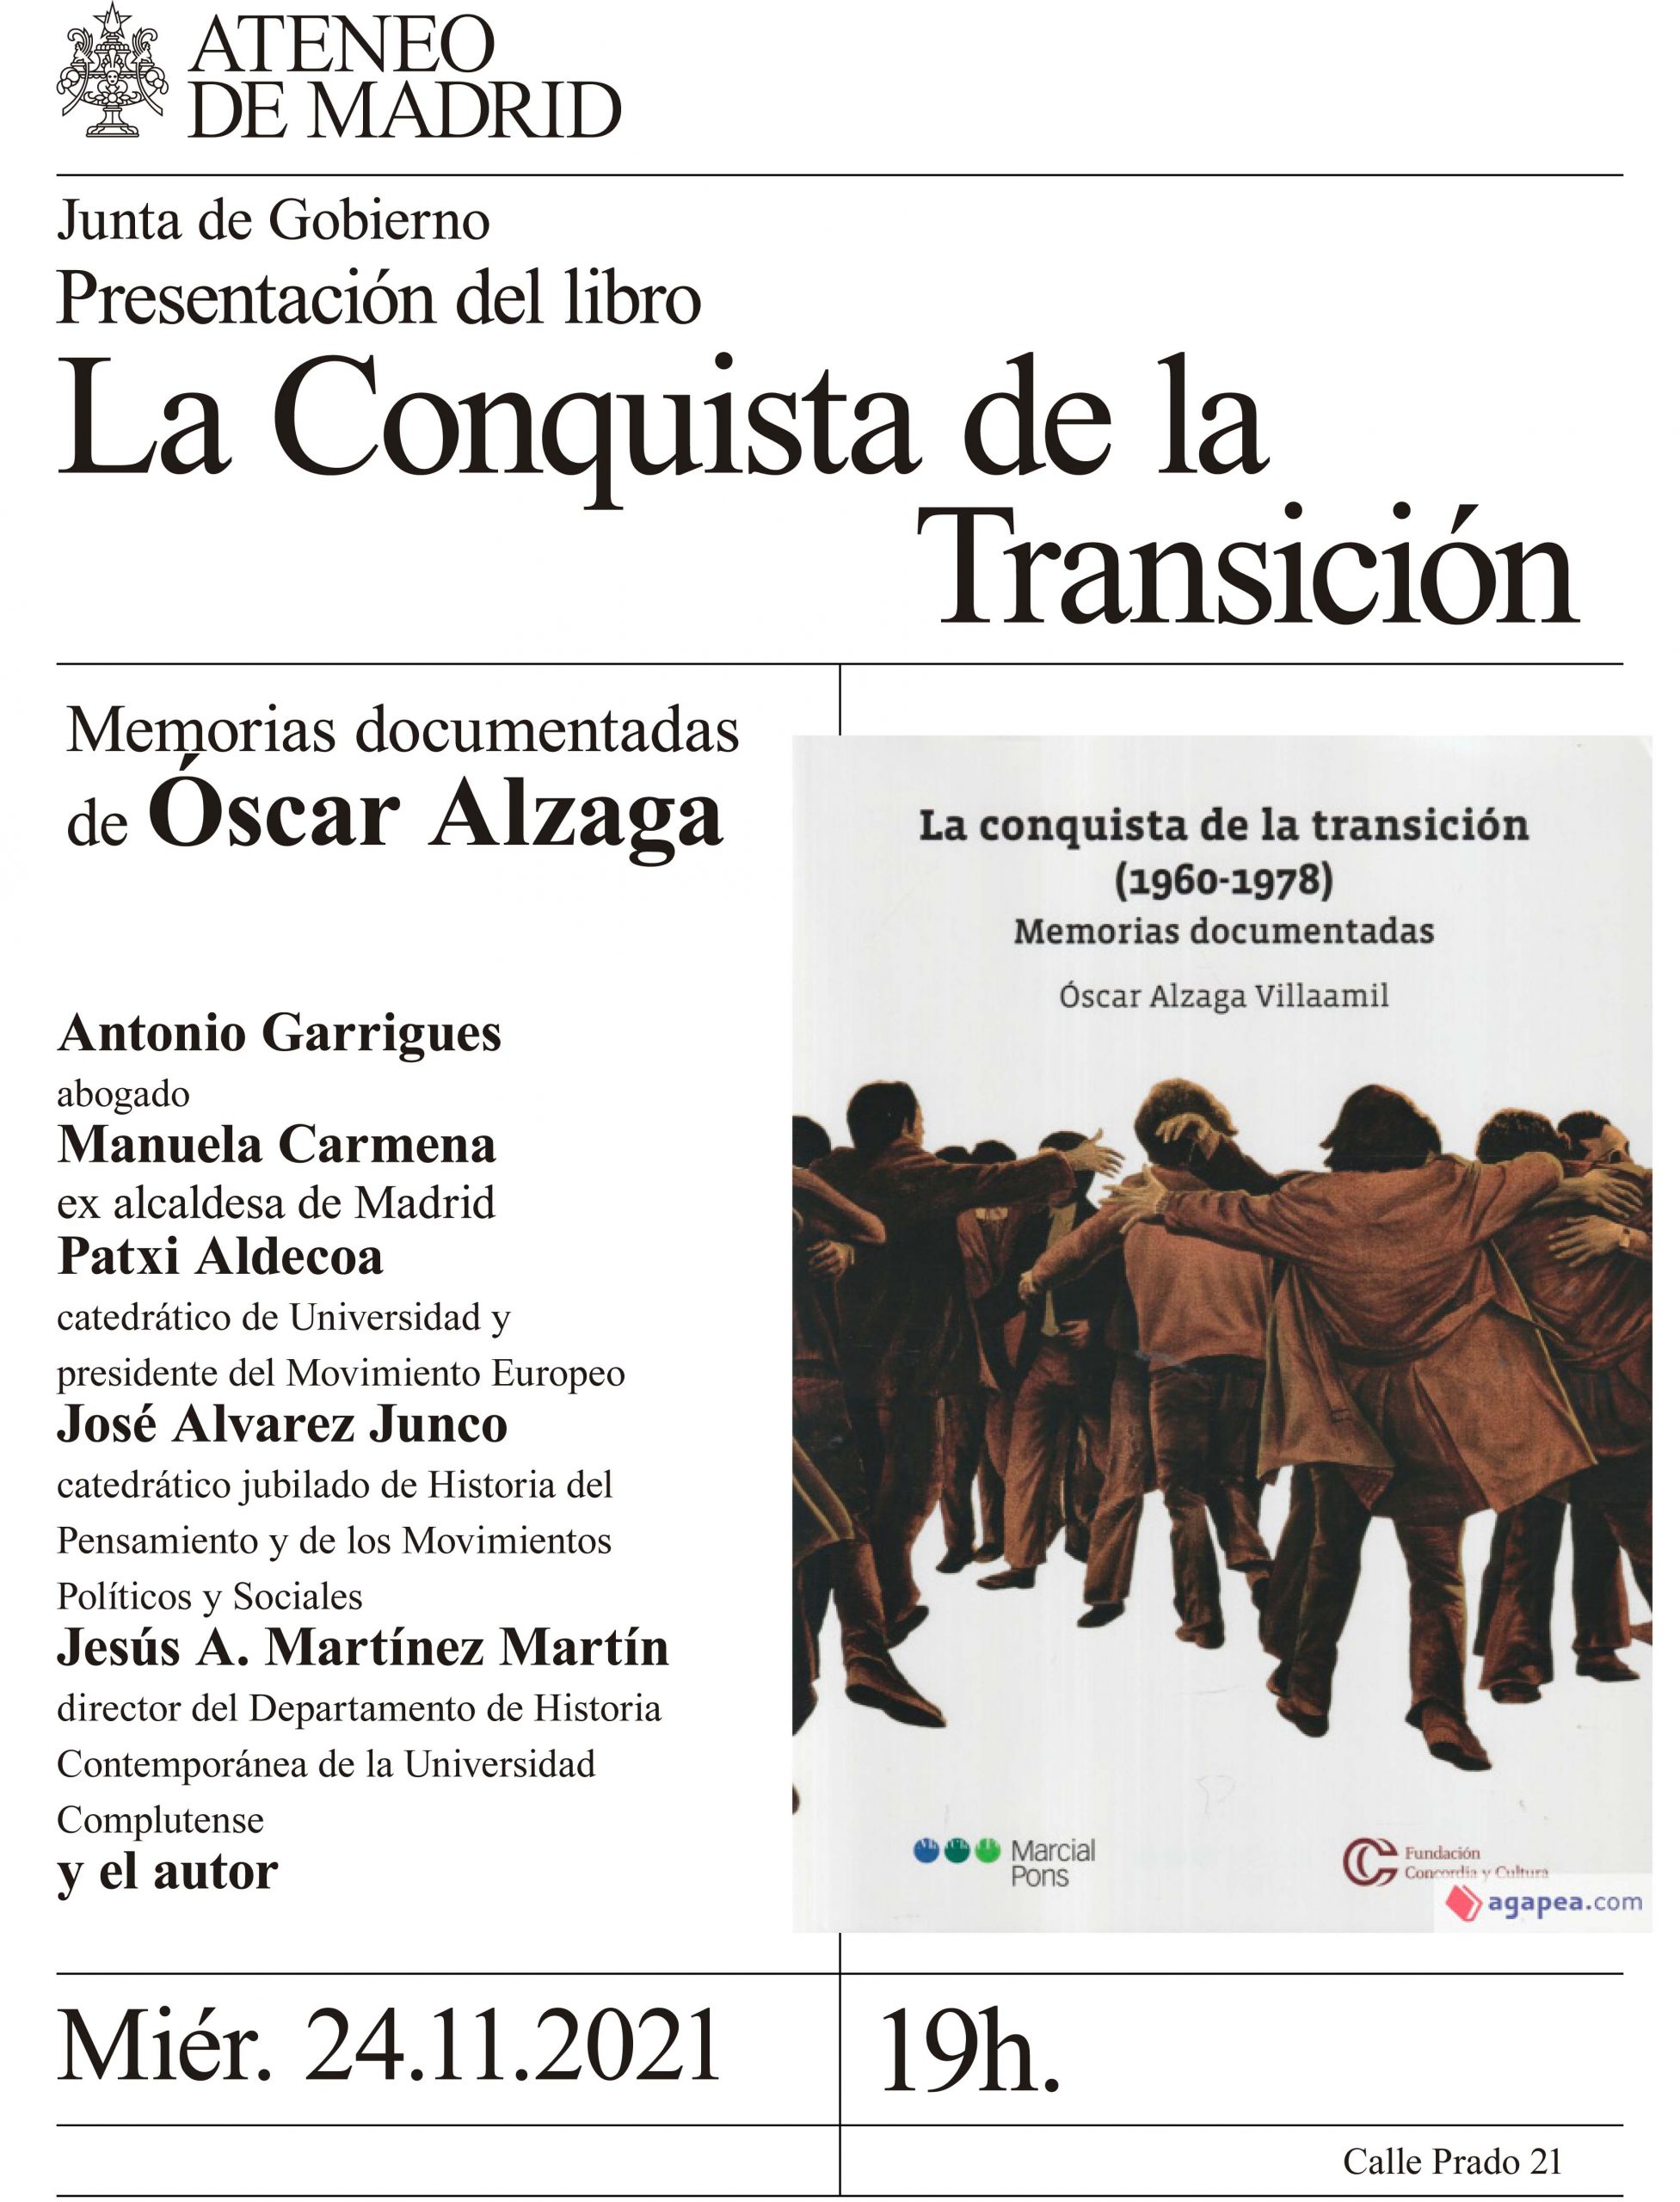 Presentación del Libro La Conquista de la Transición, de Óscar Alzaga